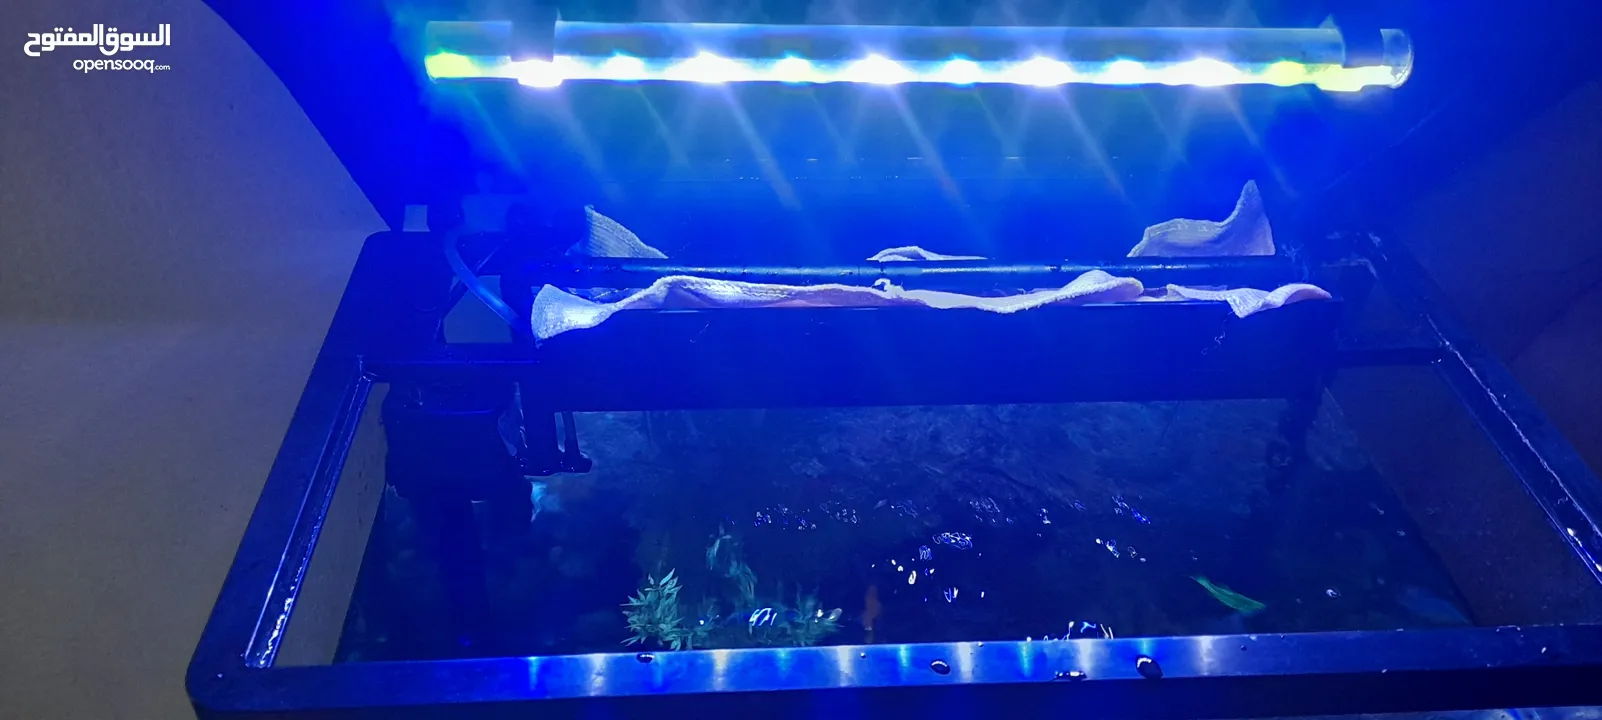 Fish Aquarium full Set